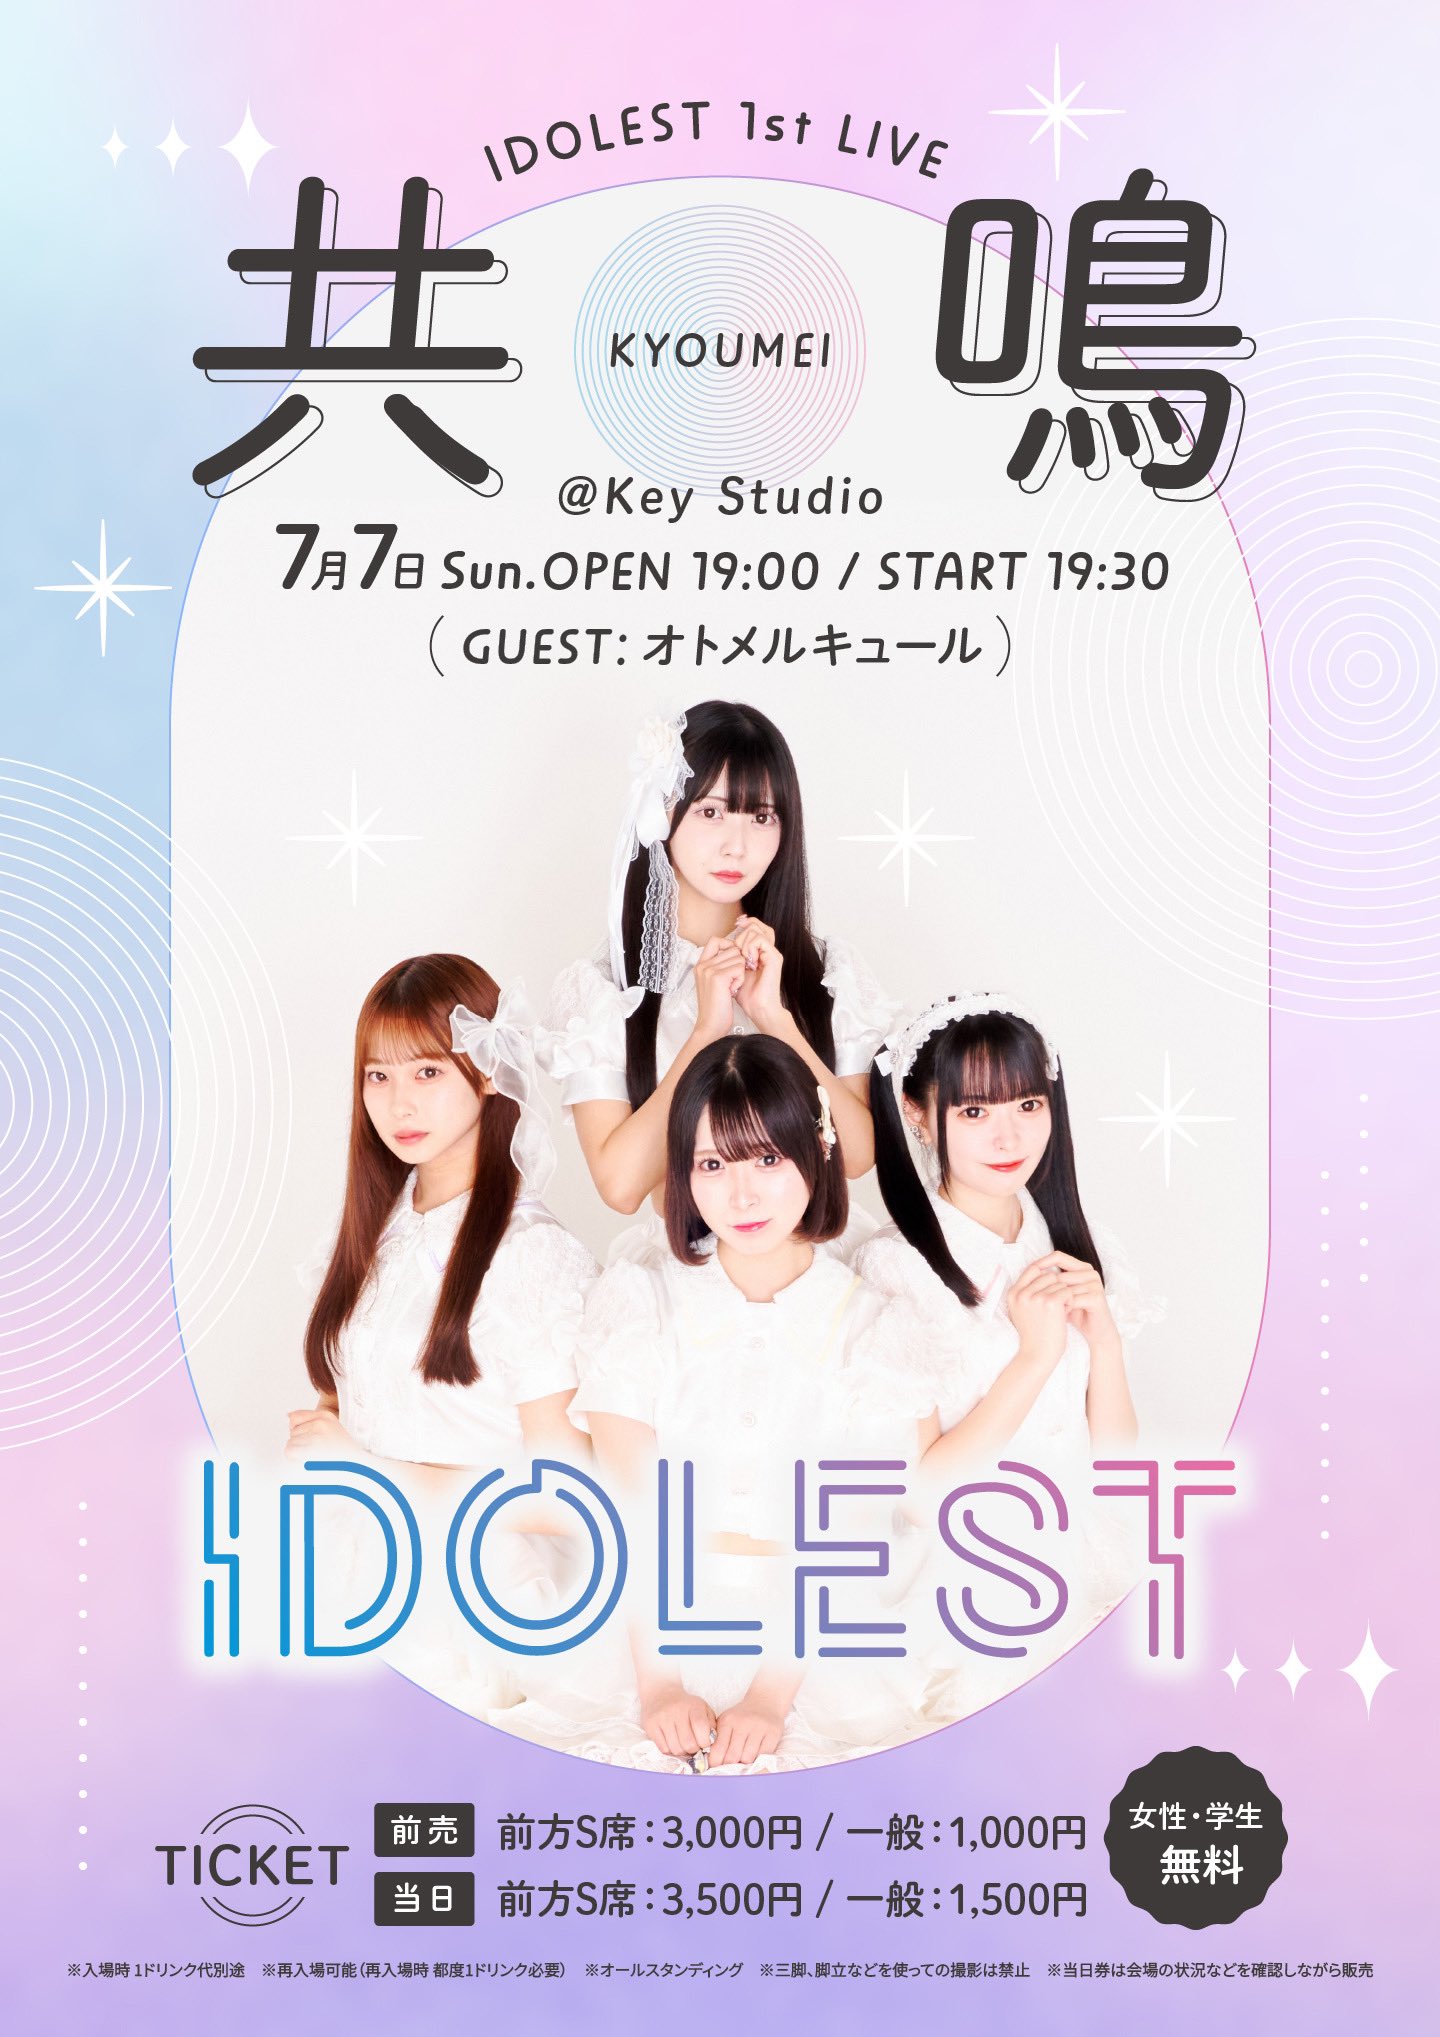 共鳴 〜IDOLEST 1st LIVE〜